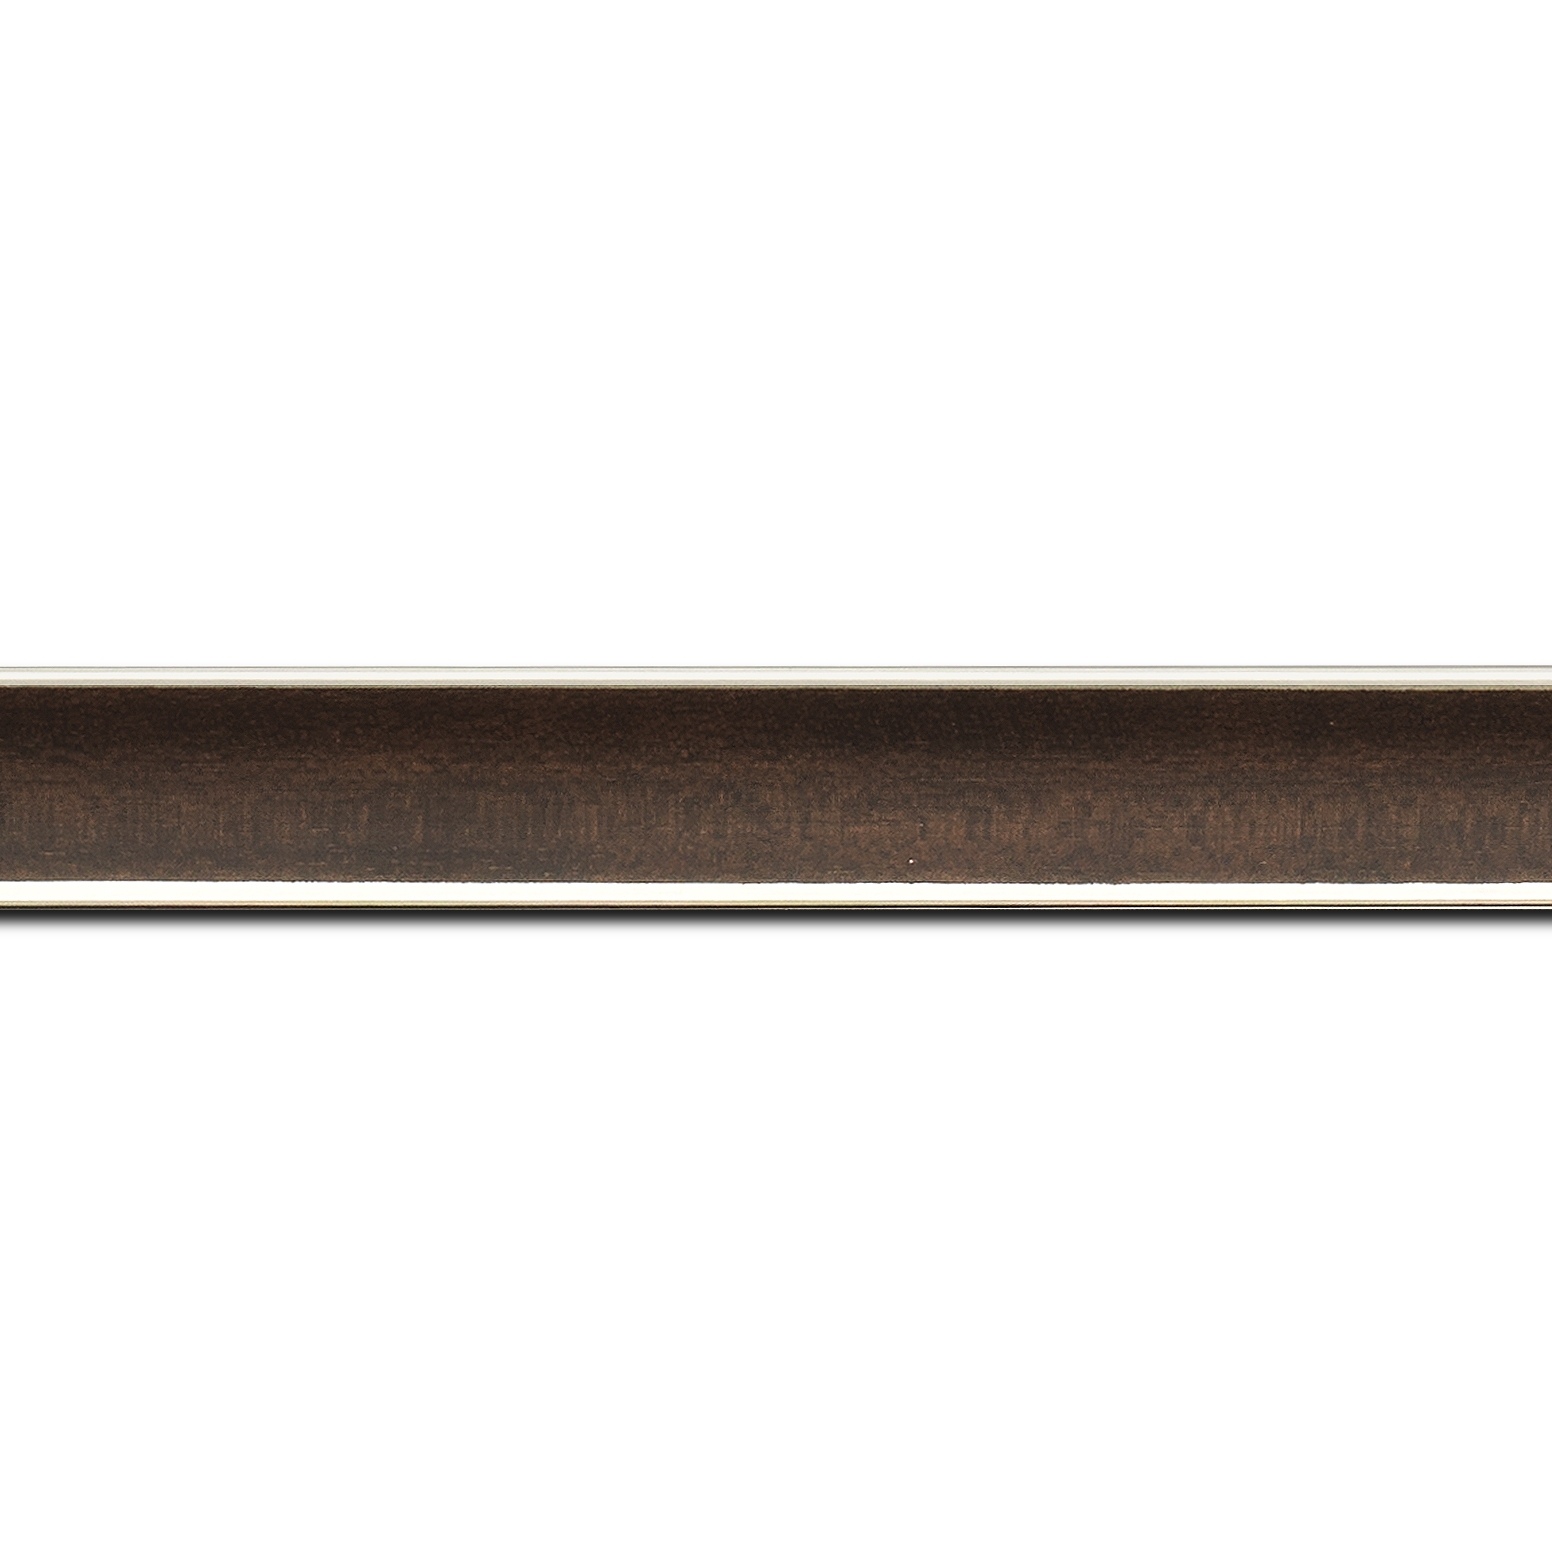 Baguette longueur 1.40m bois profil concave largeur 2.4cm couleur palissandre  satiné  filet argent de chaque coté (pore du bois apparent)